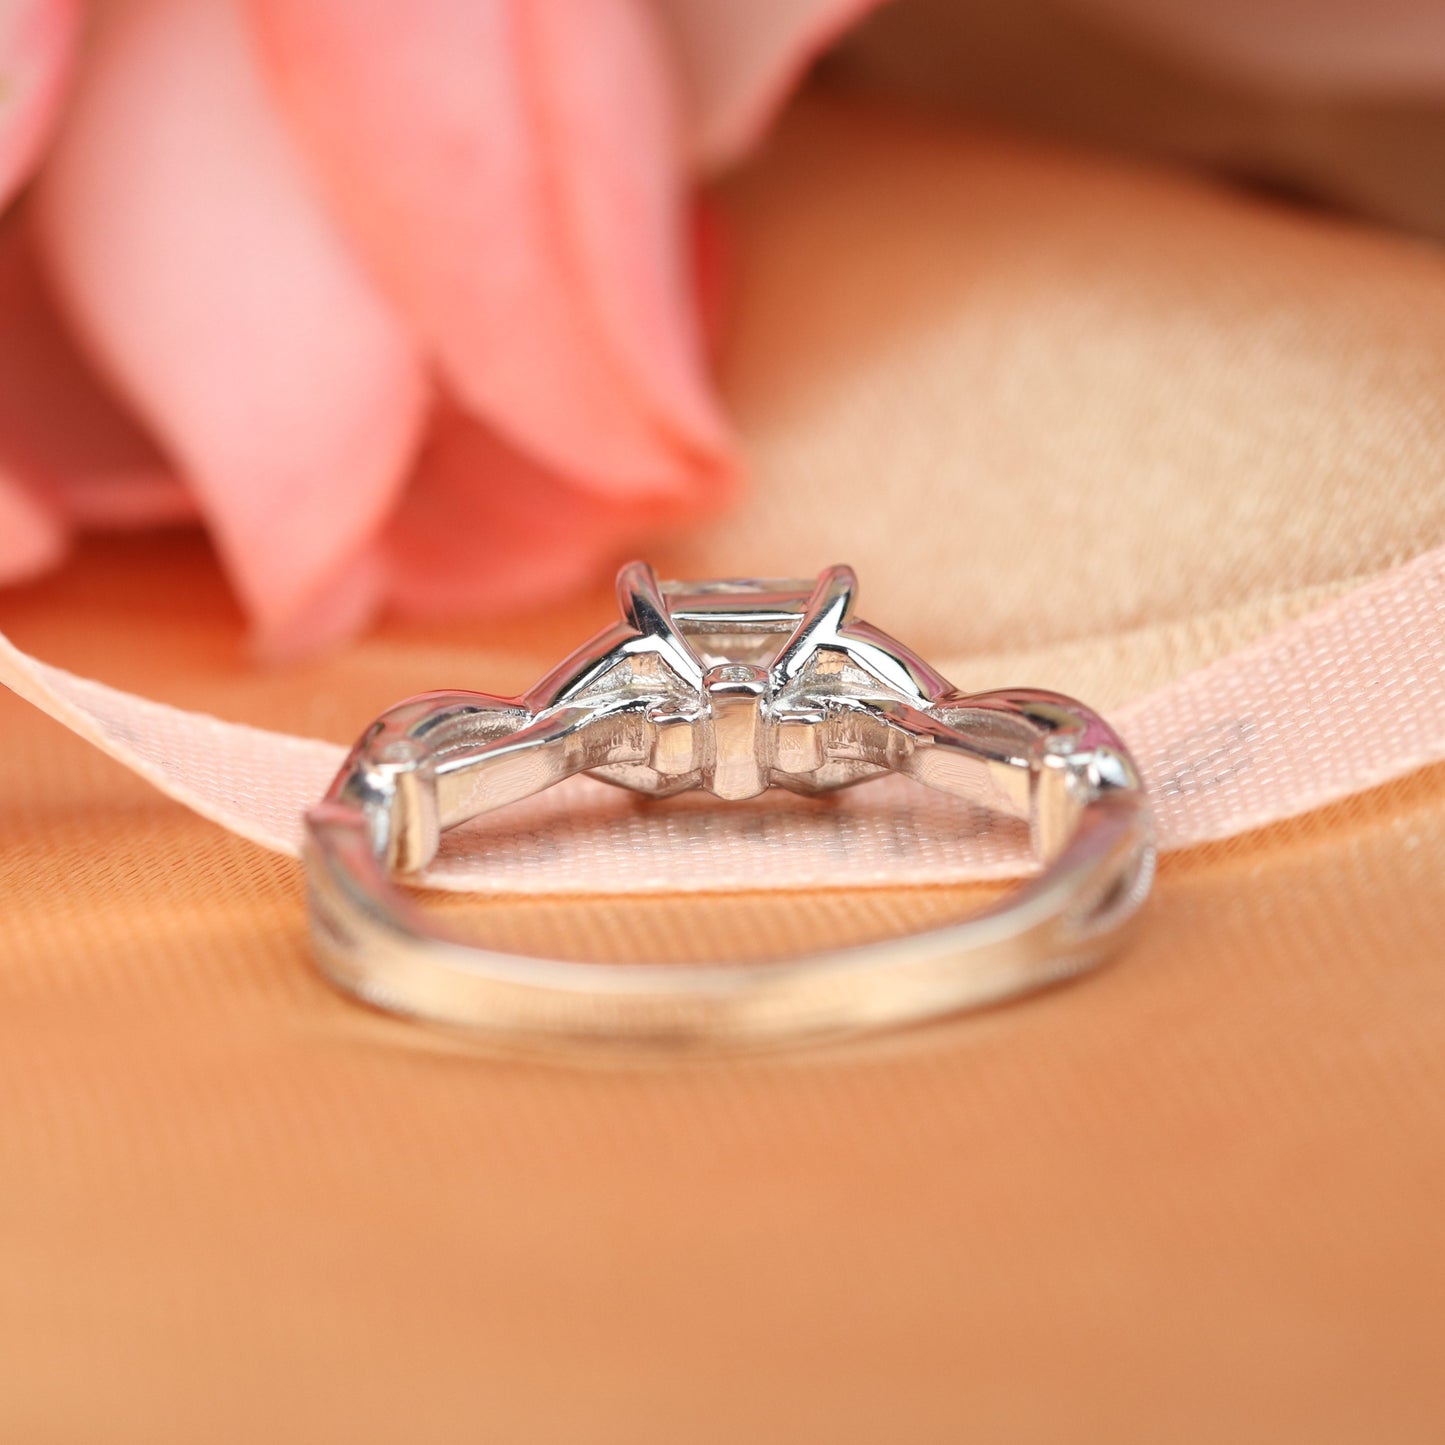 Unique Vintage 1 carat Princess Cut Moissanite Solitaire Engagement Ring in White Gold